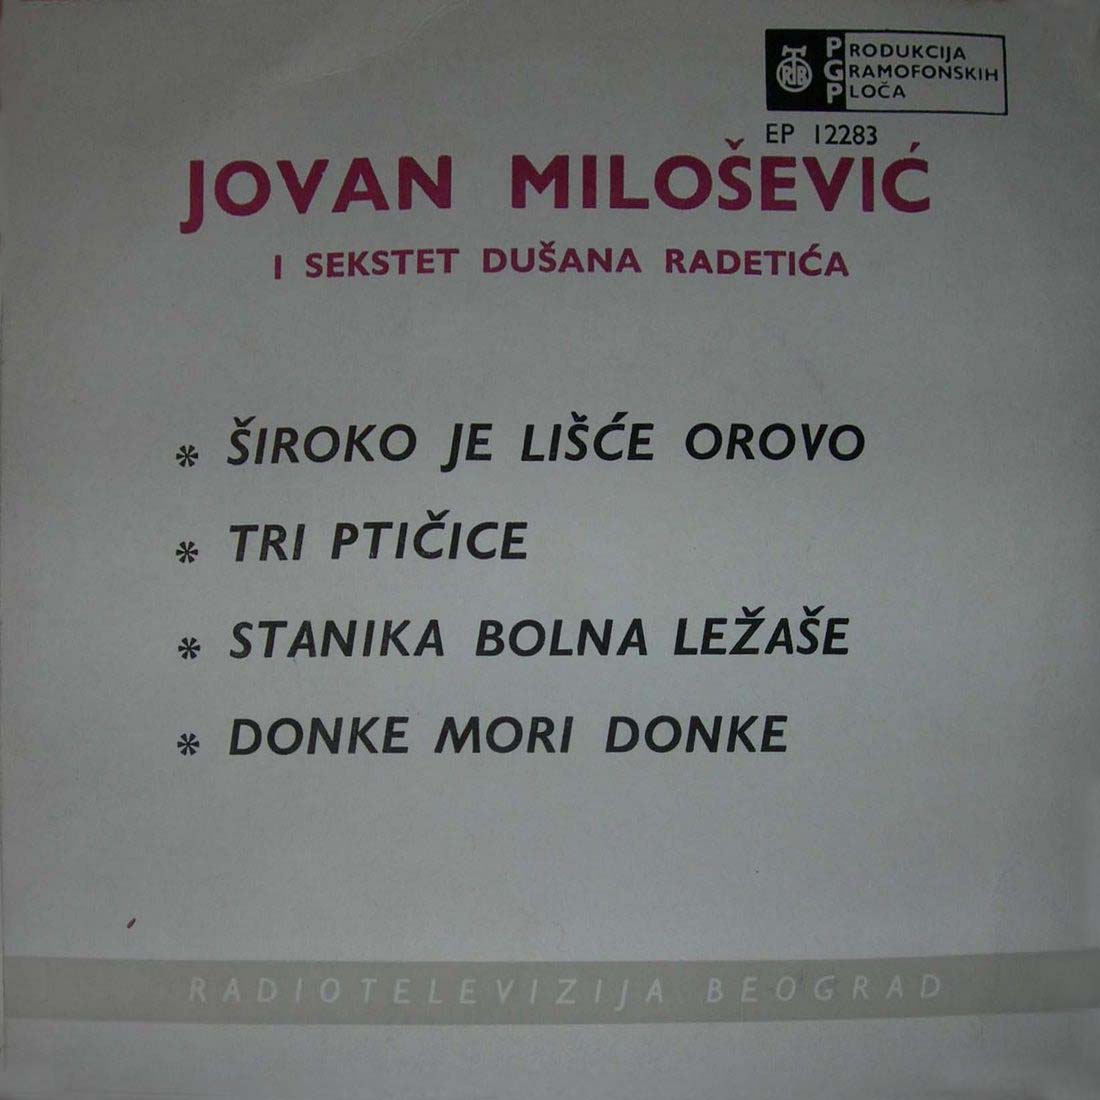 Jovan Milosevic z